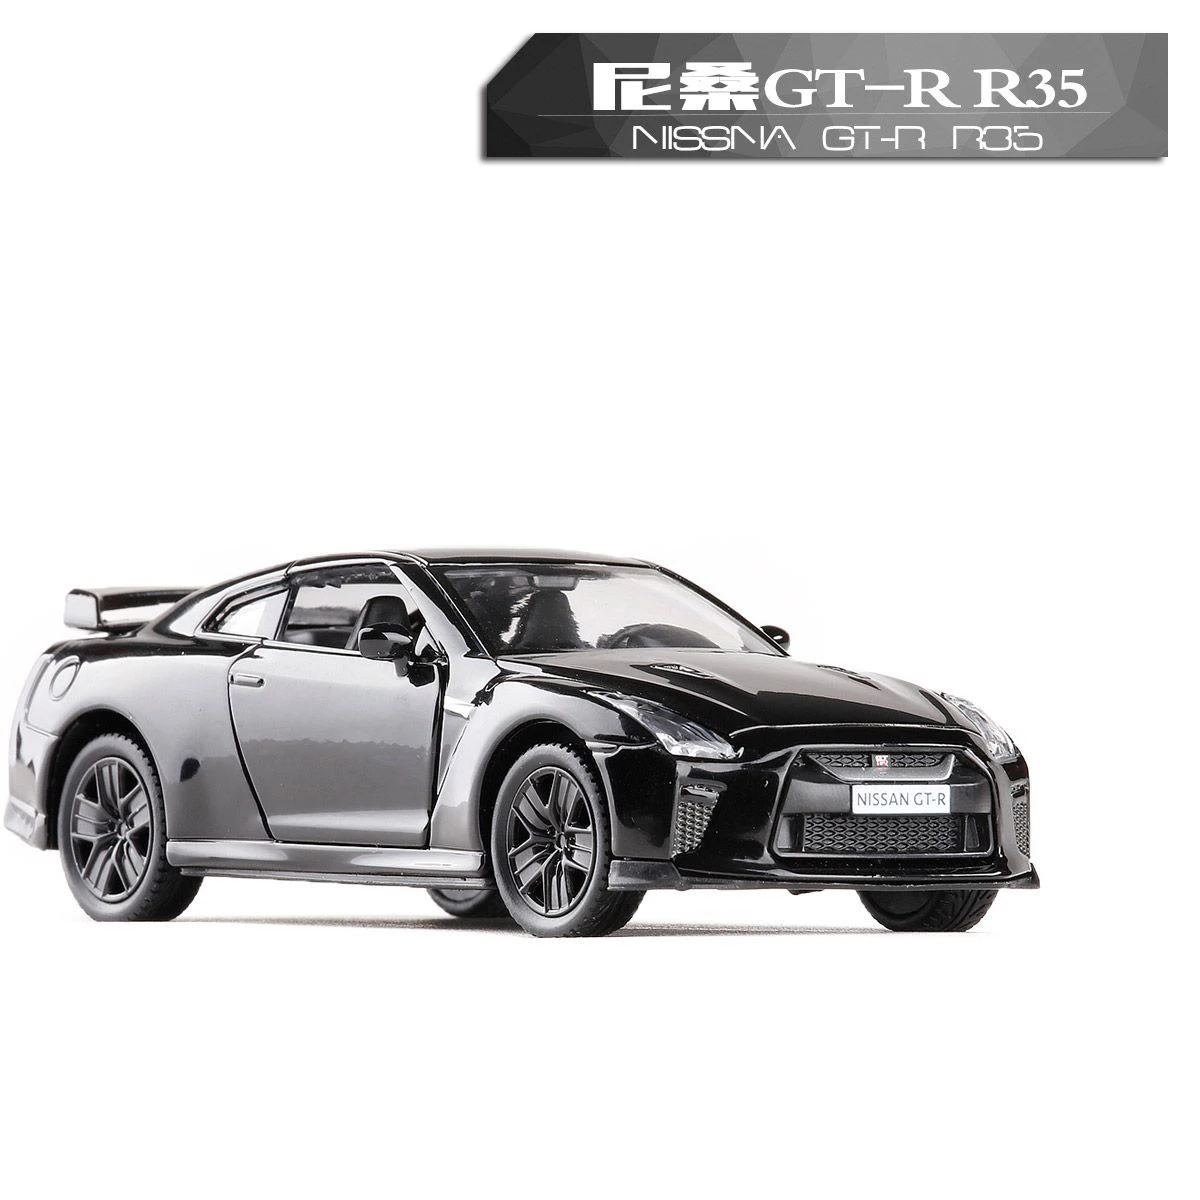 Высокая симуляция 1:36 RMZ City GT-R R35 литые модели автомобилей, игрушки, оттягивающие назад машинки, игрушки, спортивный автомобиль, автомобиль для детей, игрушки, подарки